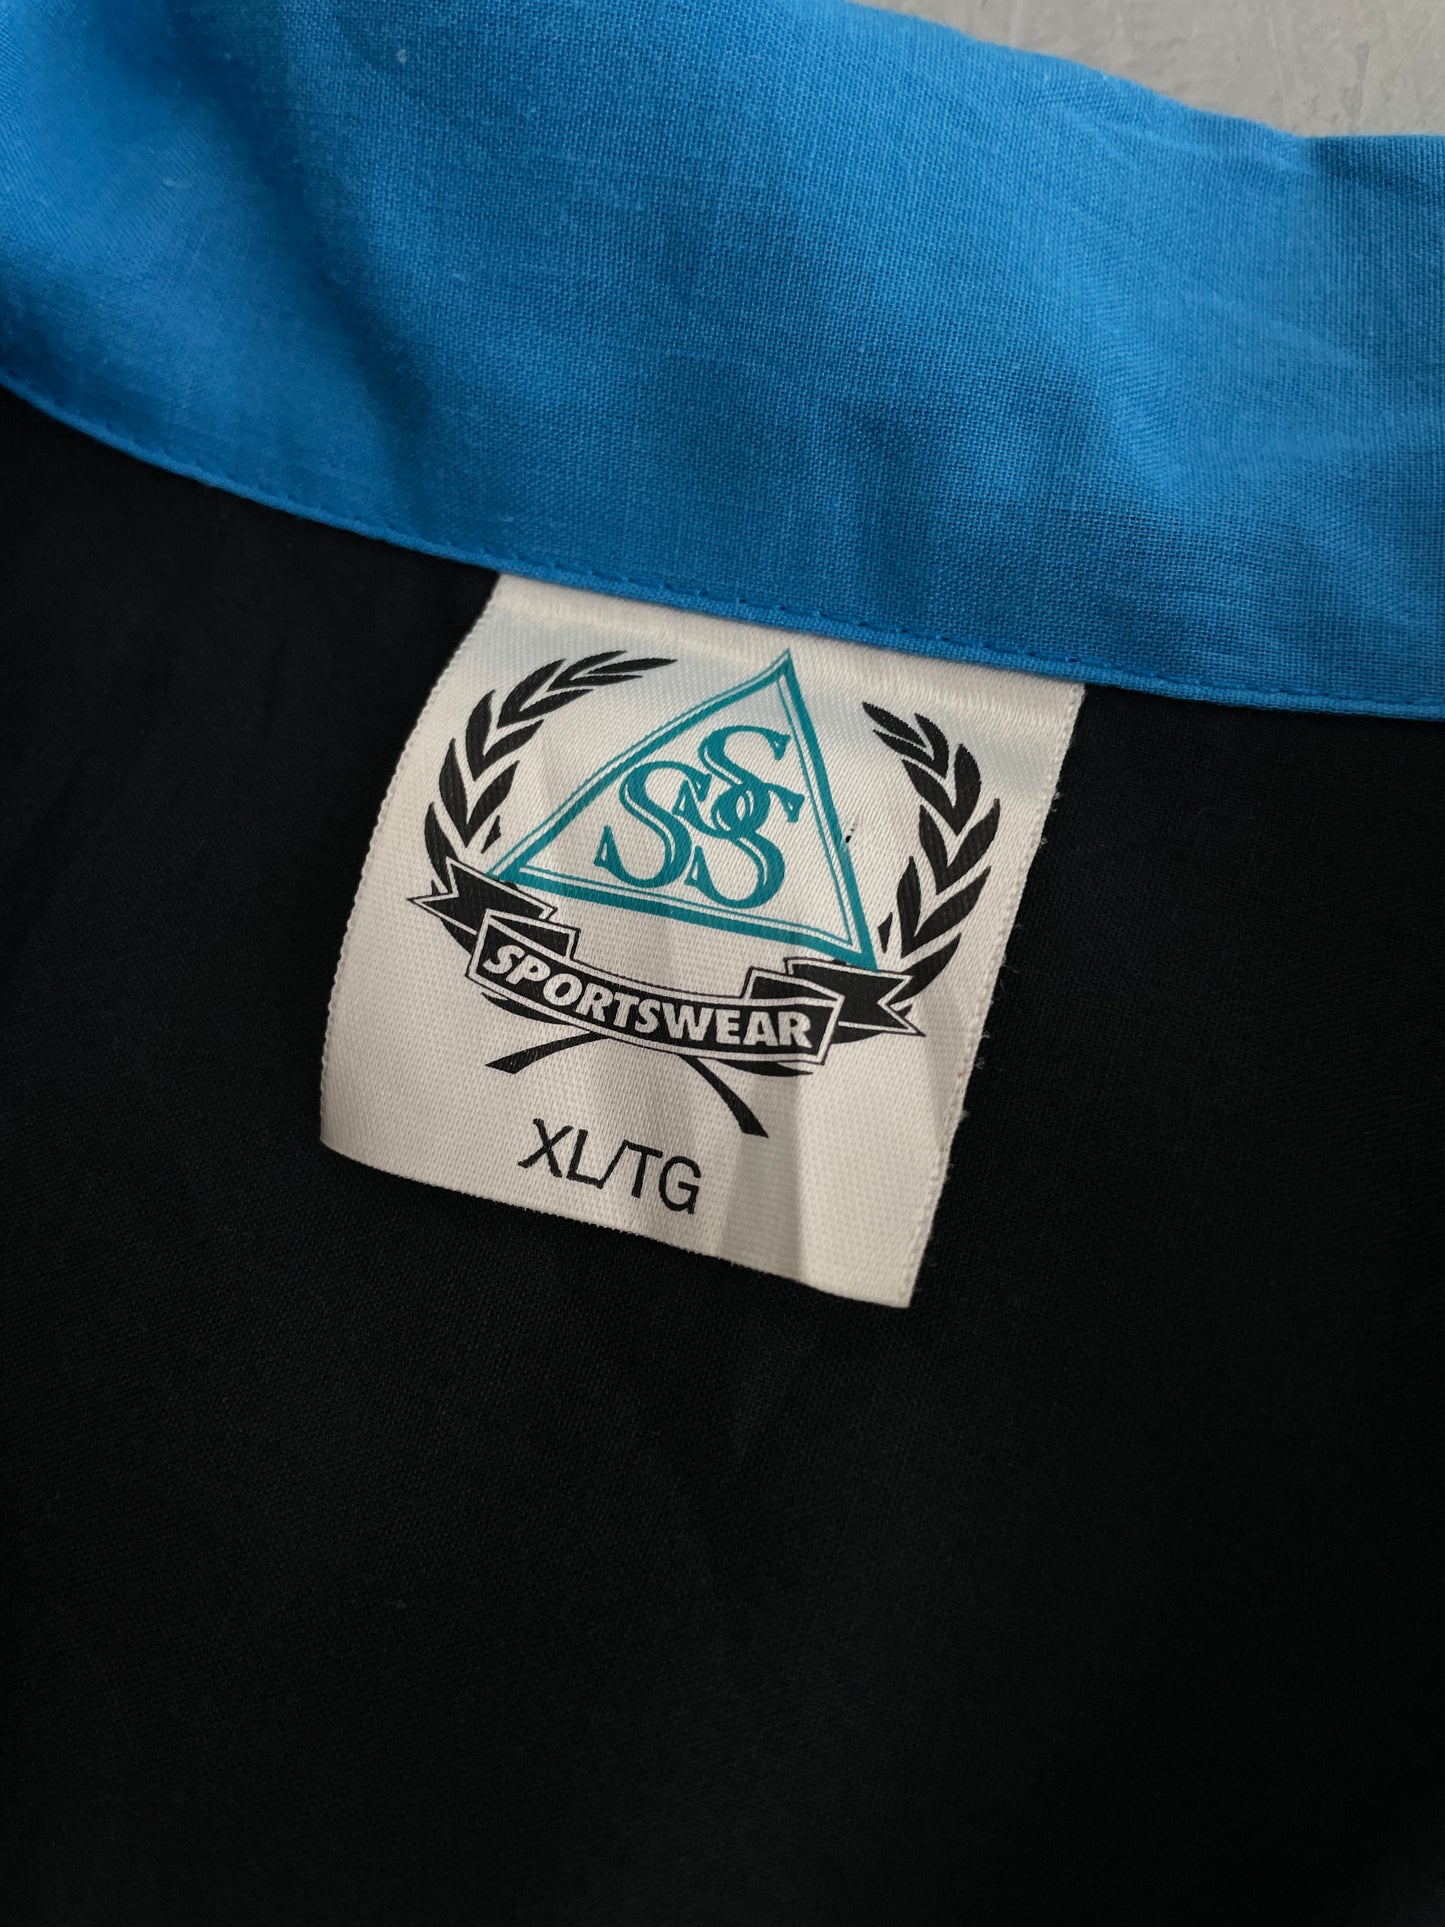 Nansavik Dart League Shirt [XL]